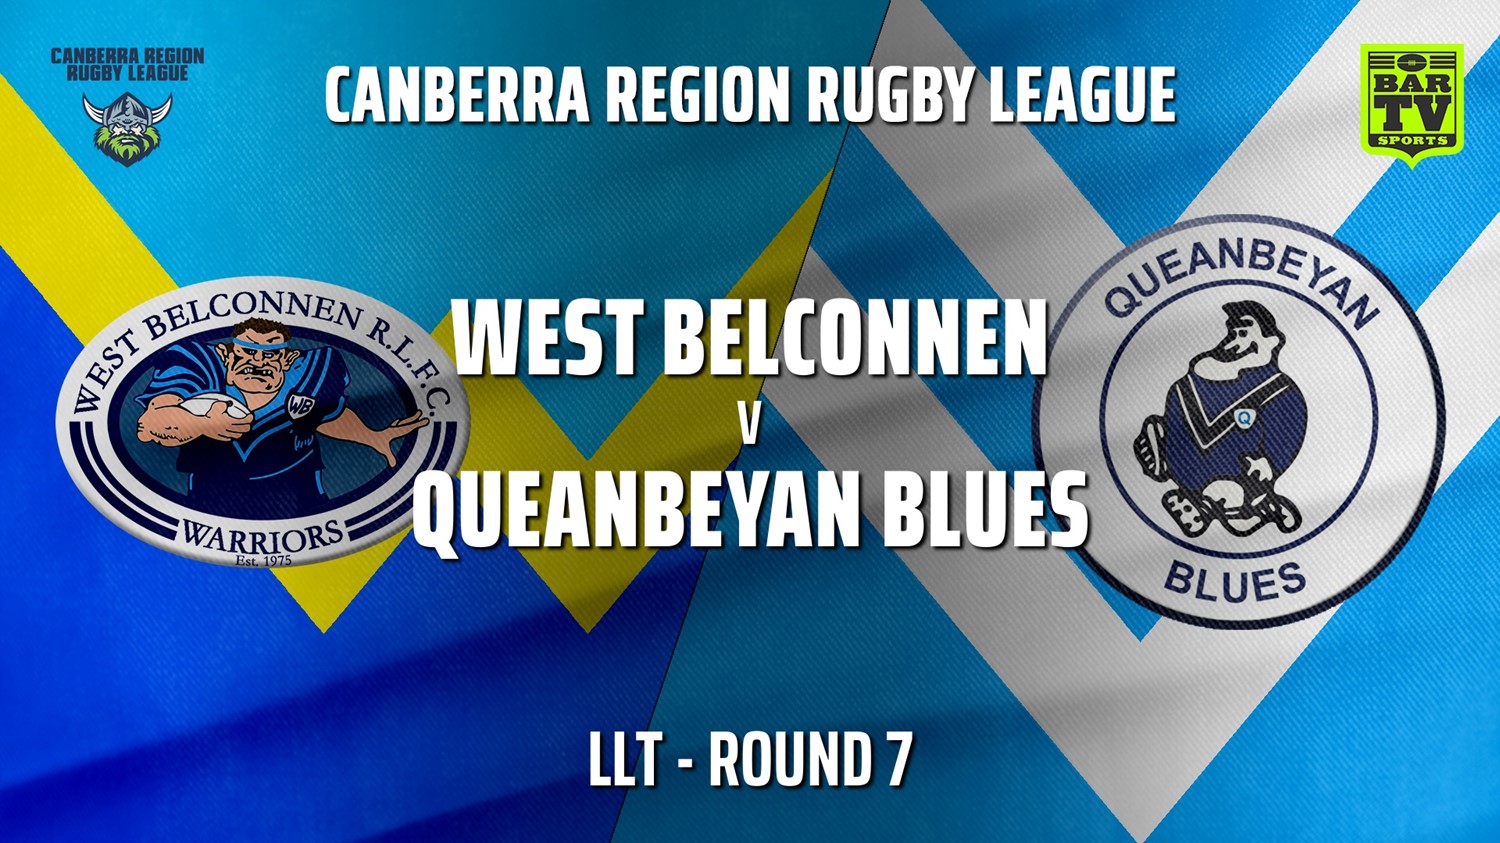 210529-CRRL Round 7 - LLT - West Belconnen Warriors v Queanbeyan Blues Slate Image